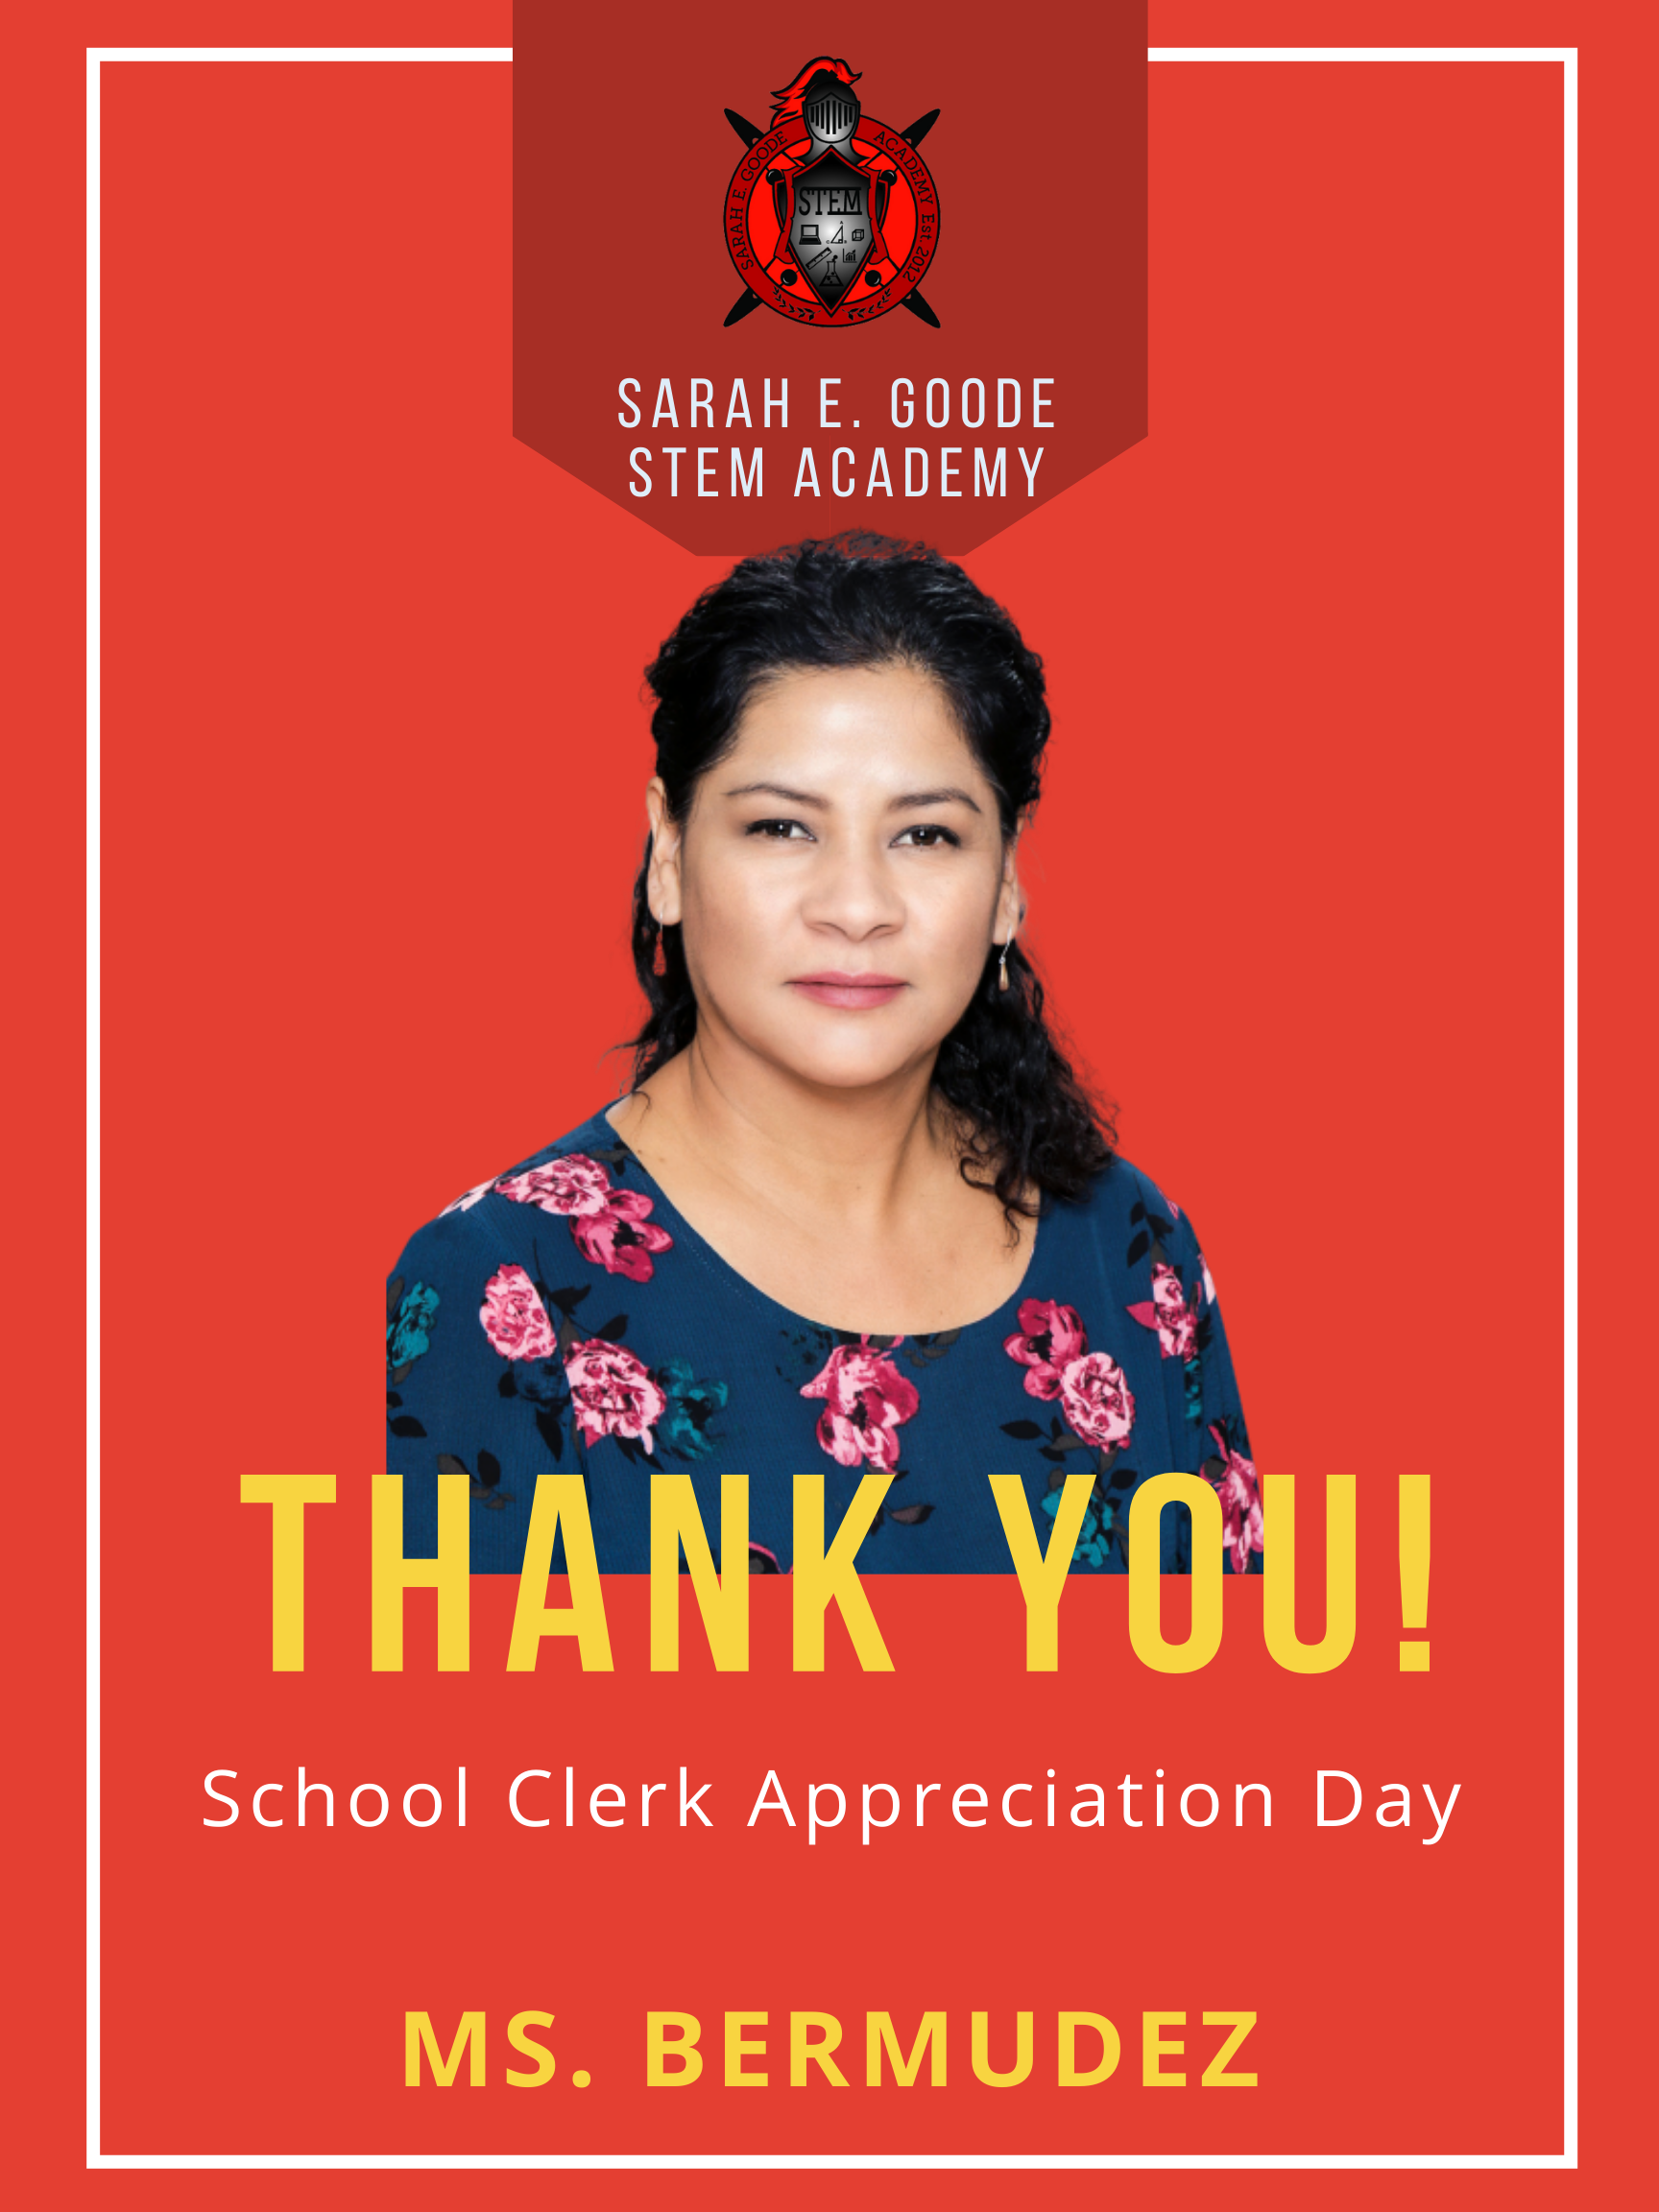 School Clerk Appreciation Day